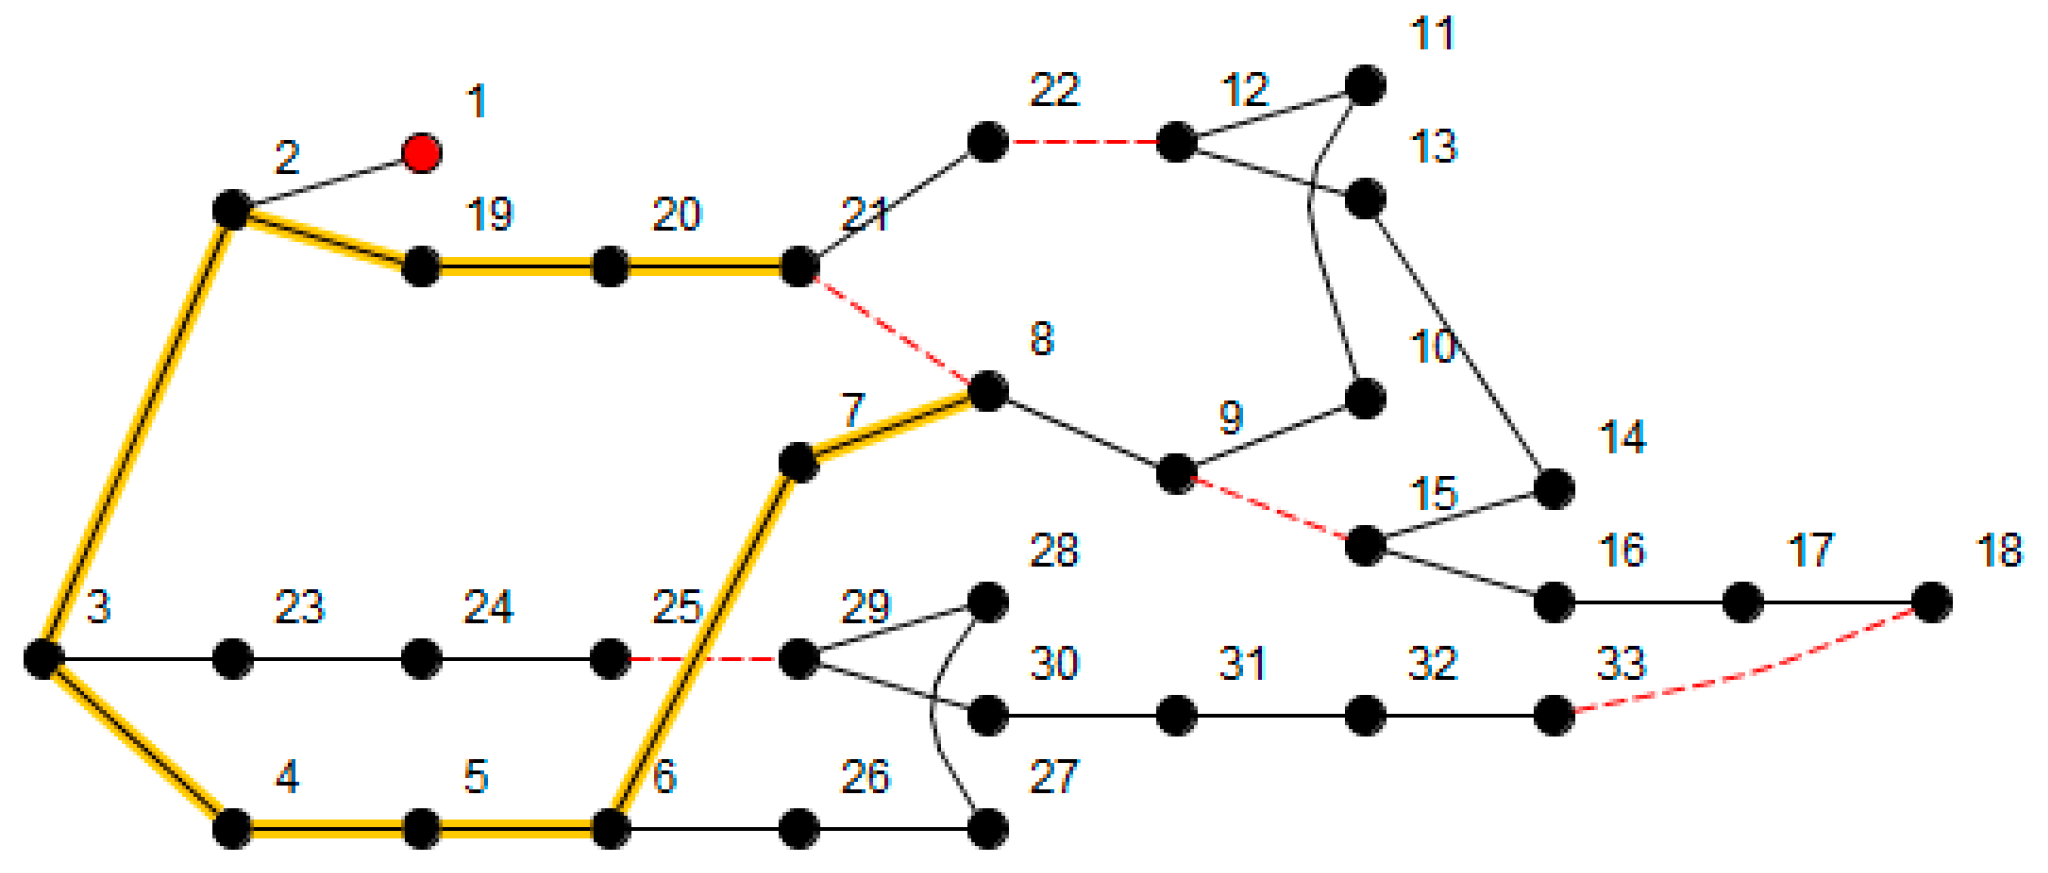 Reconfiguração de sistemas de distribuição usando o algoritmo